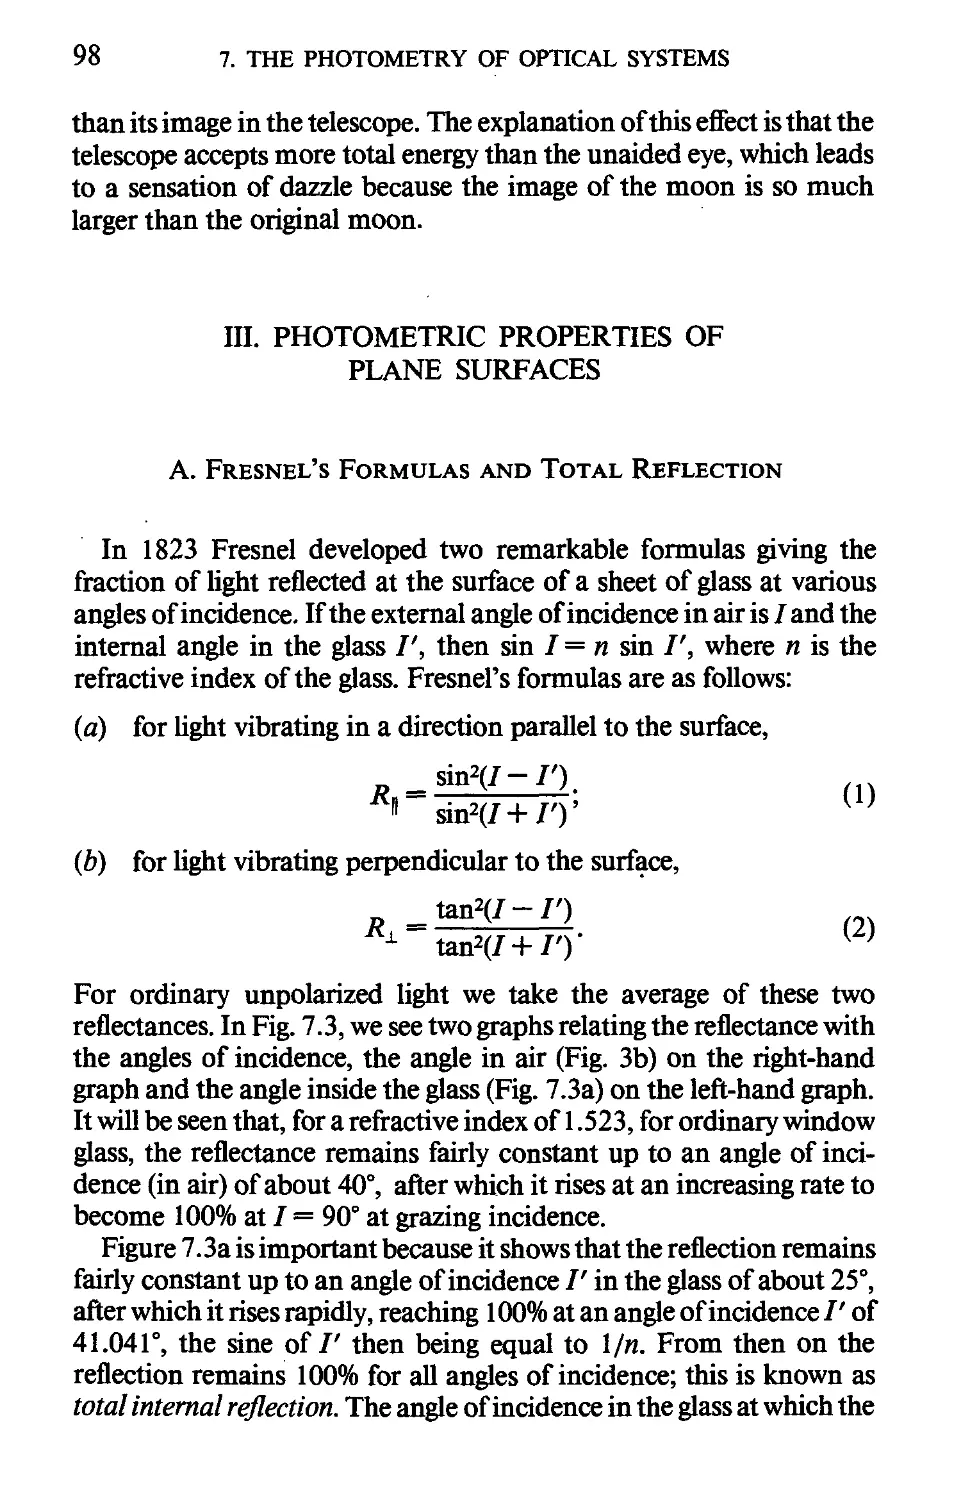 III. Photometric Properties Of Plane Surfaces